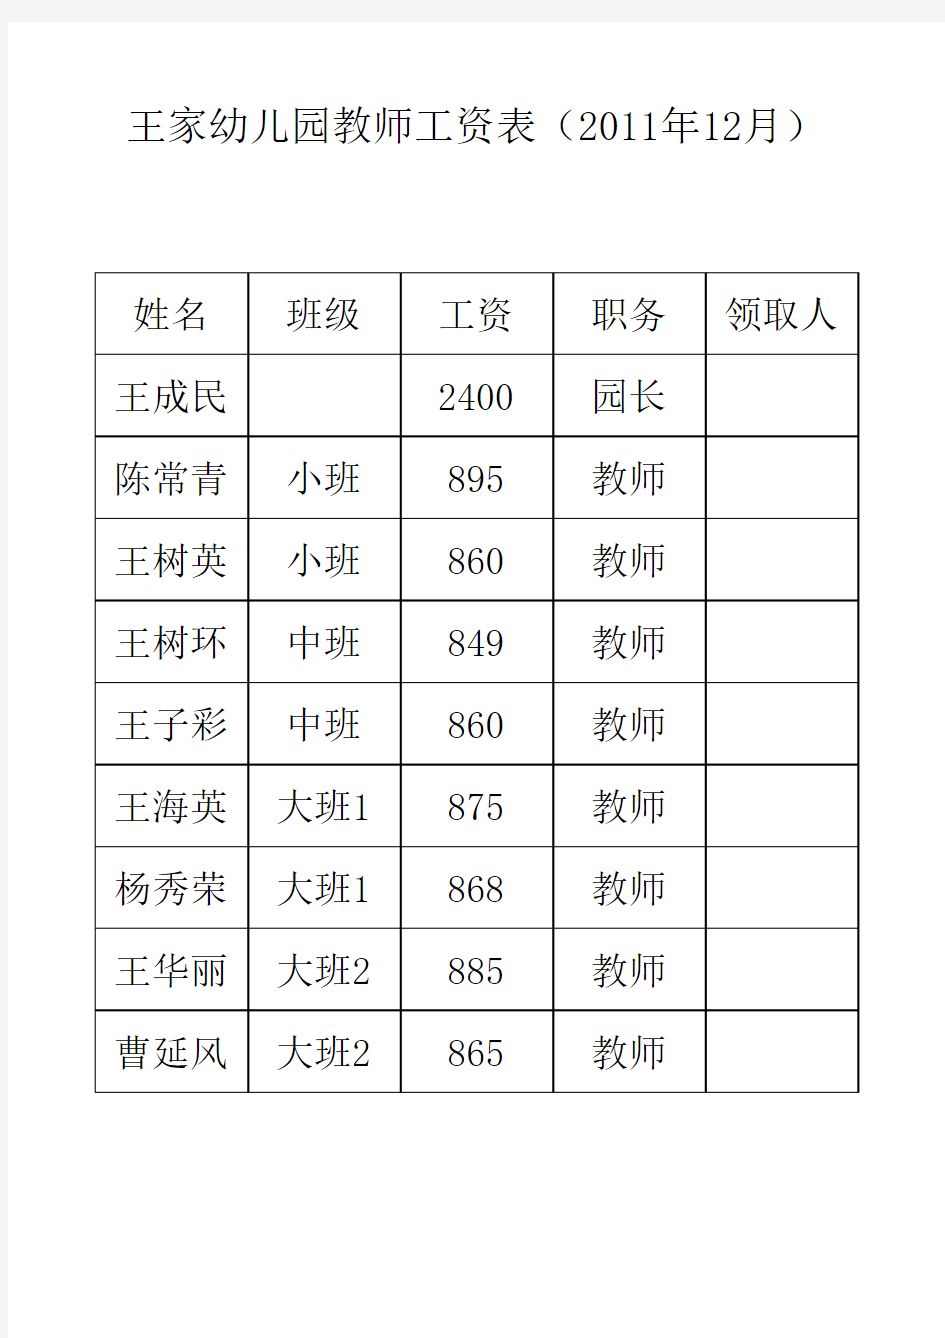 幼儿园教师工资表(2011年1月)